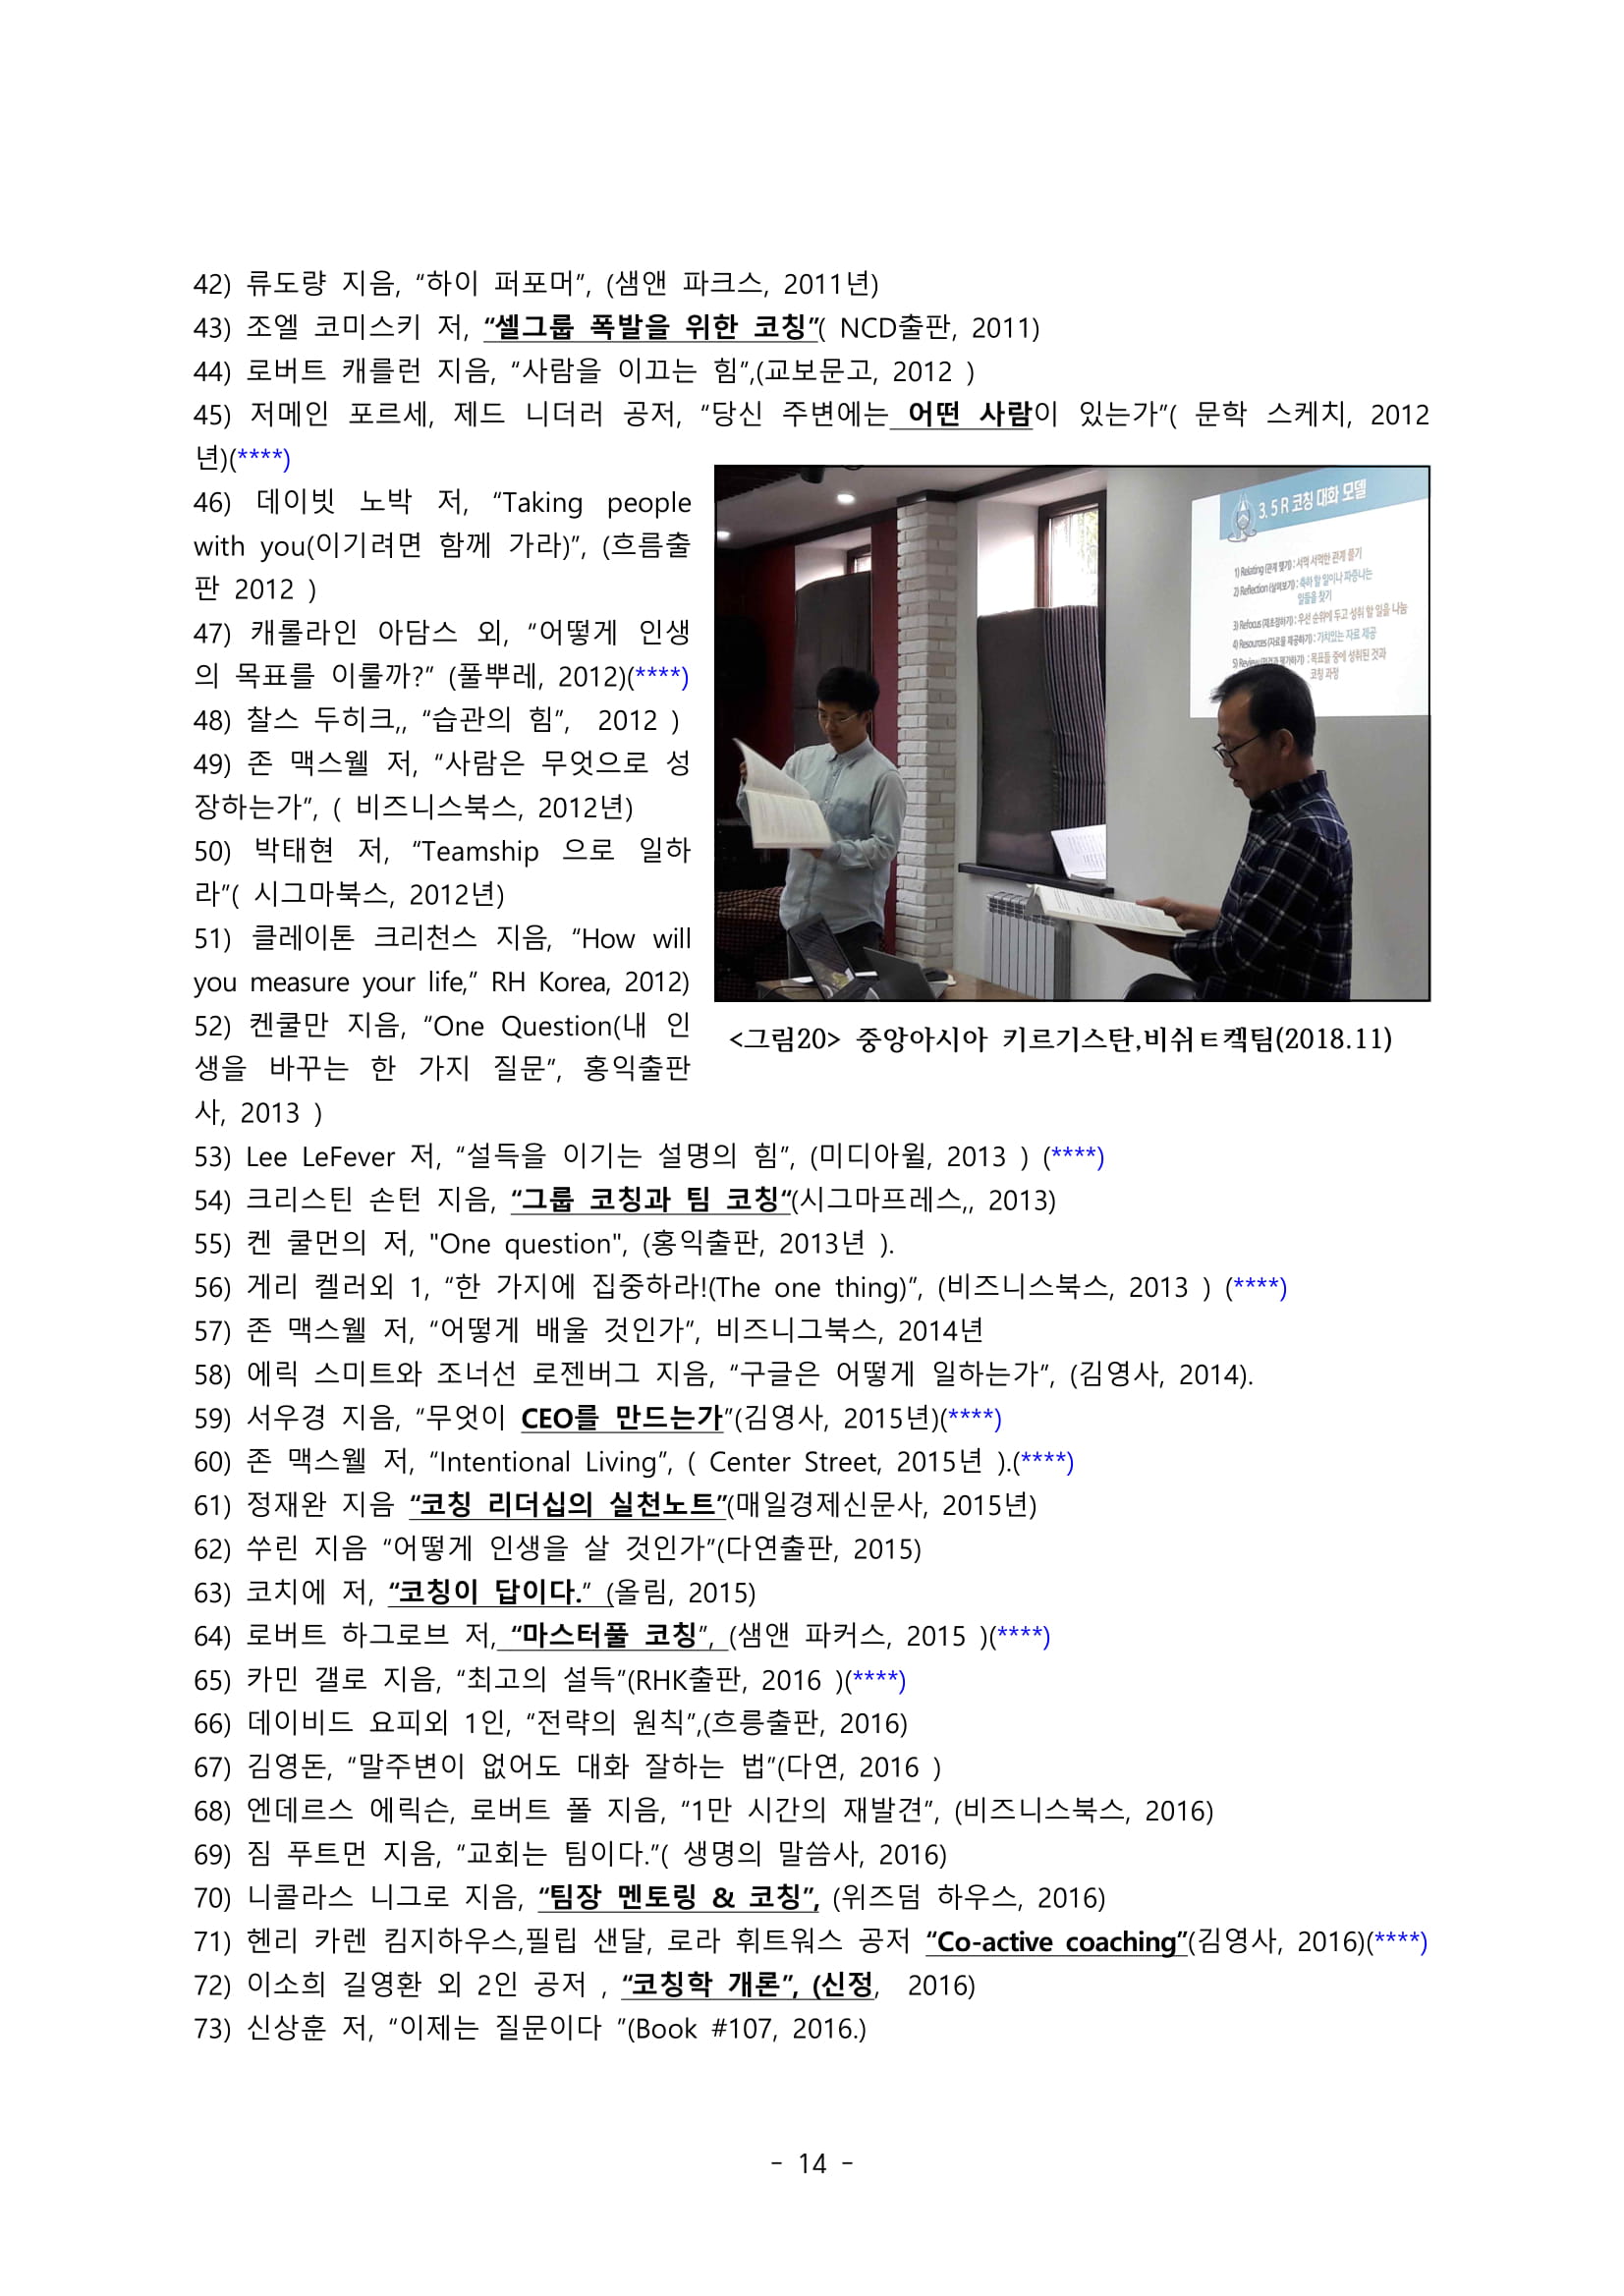 3_2019년 코칭준비 자료물(목회자용)-14.jpg